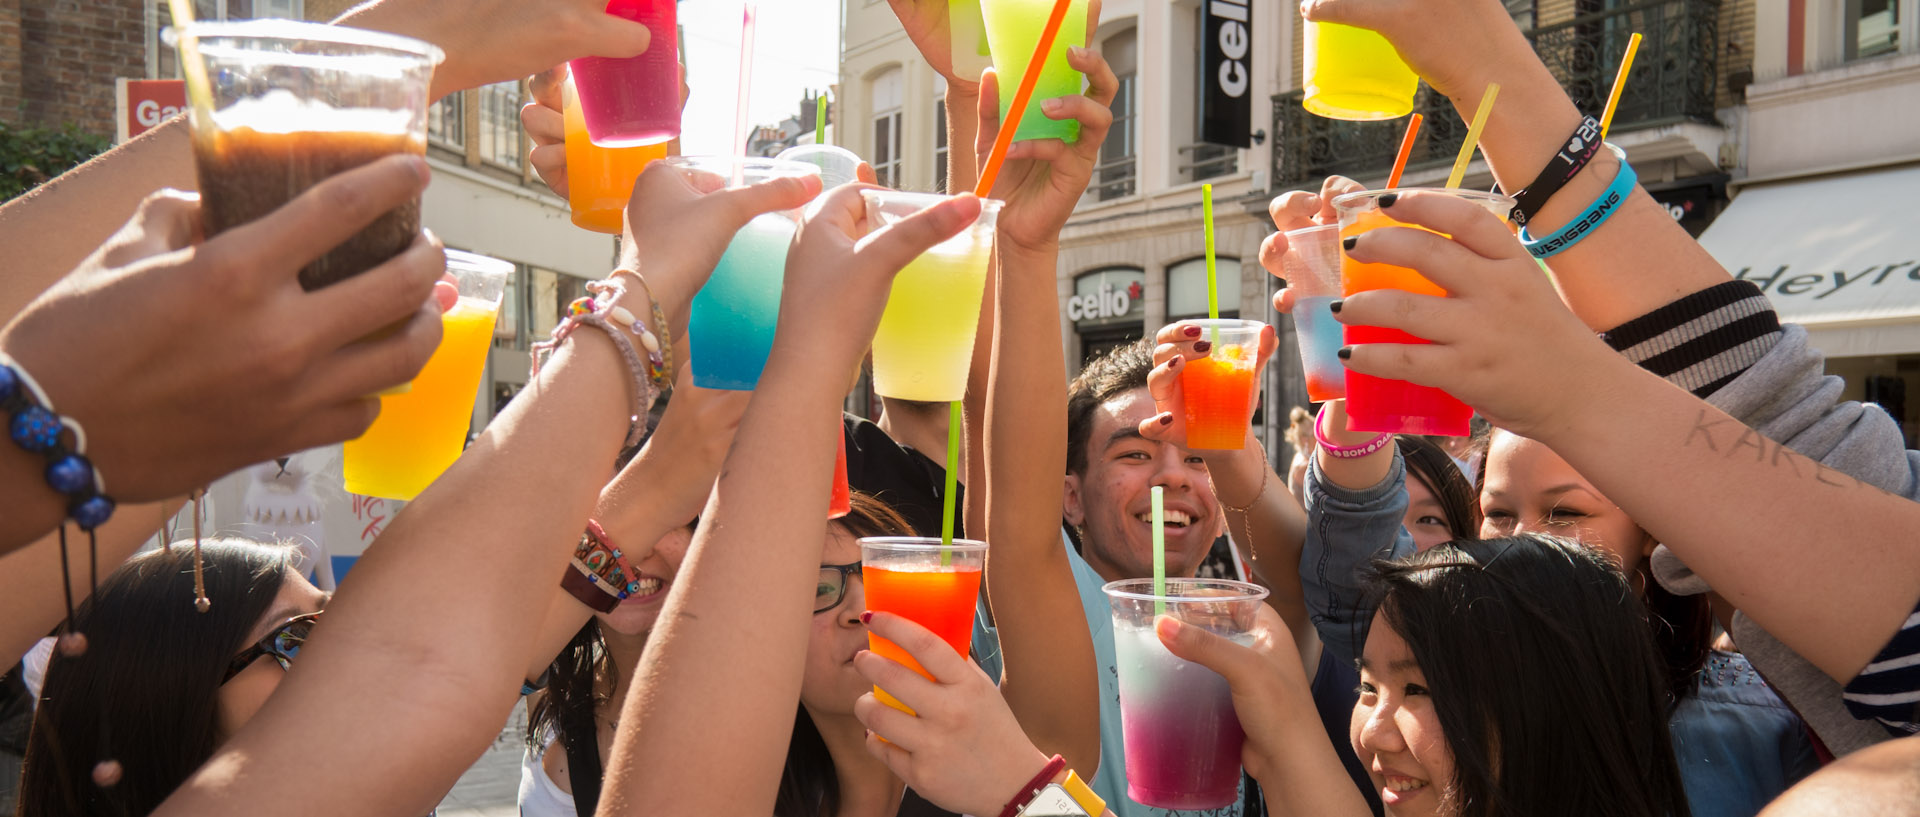 Jeunes levant leurs verres multicolores, rue de Béthune, à Lille.